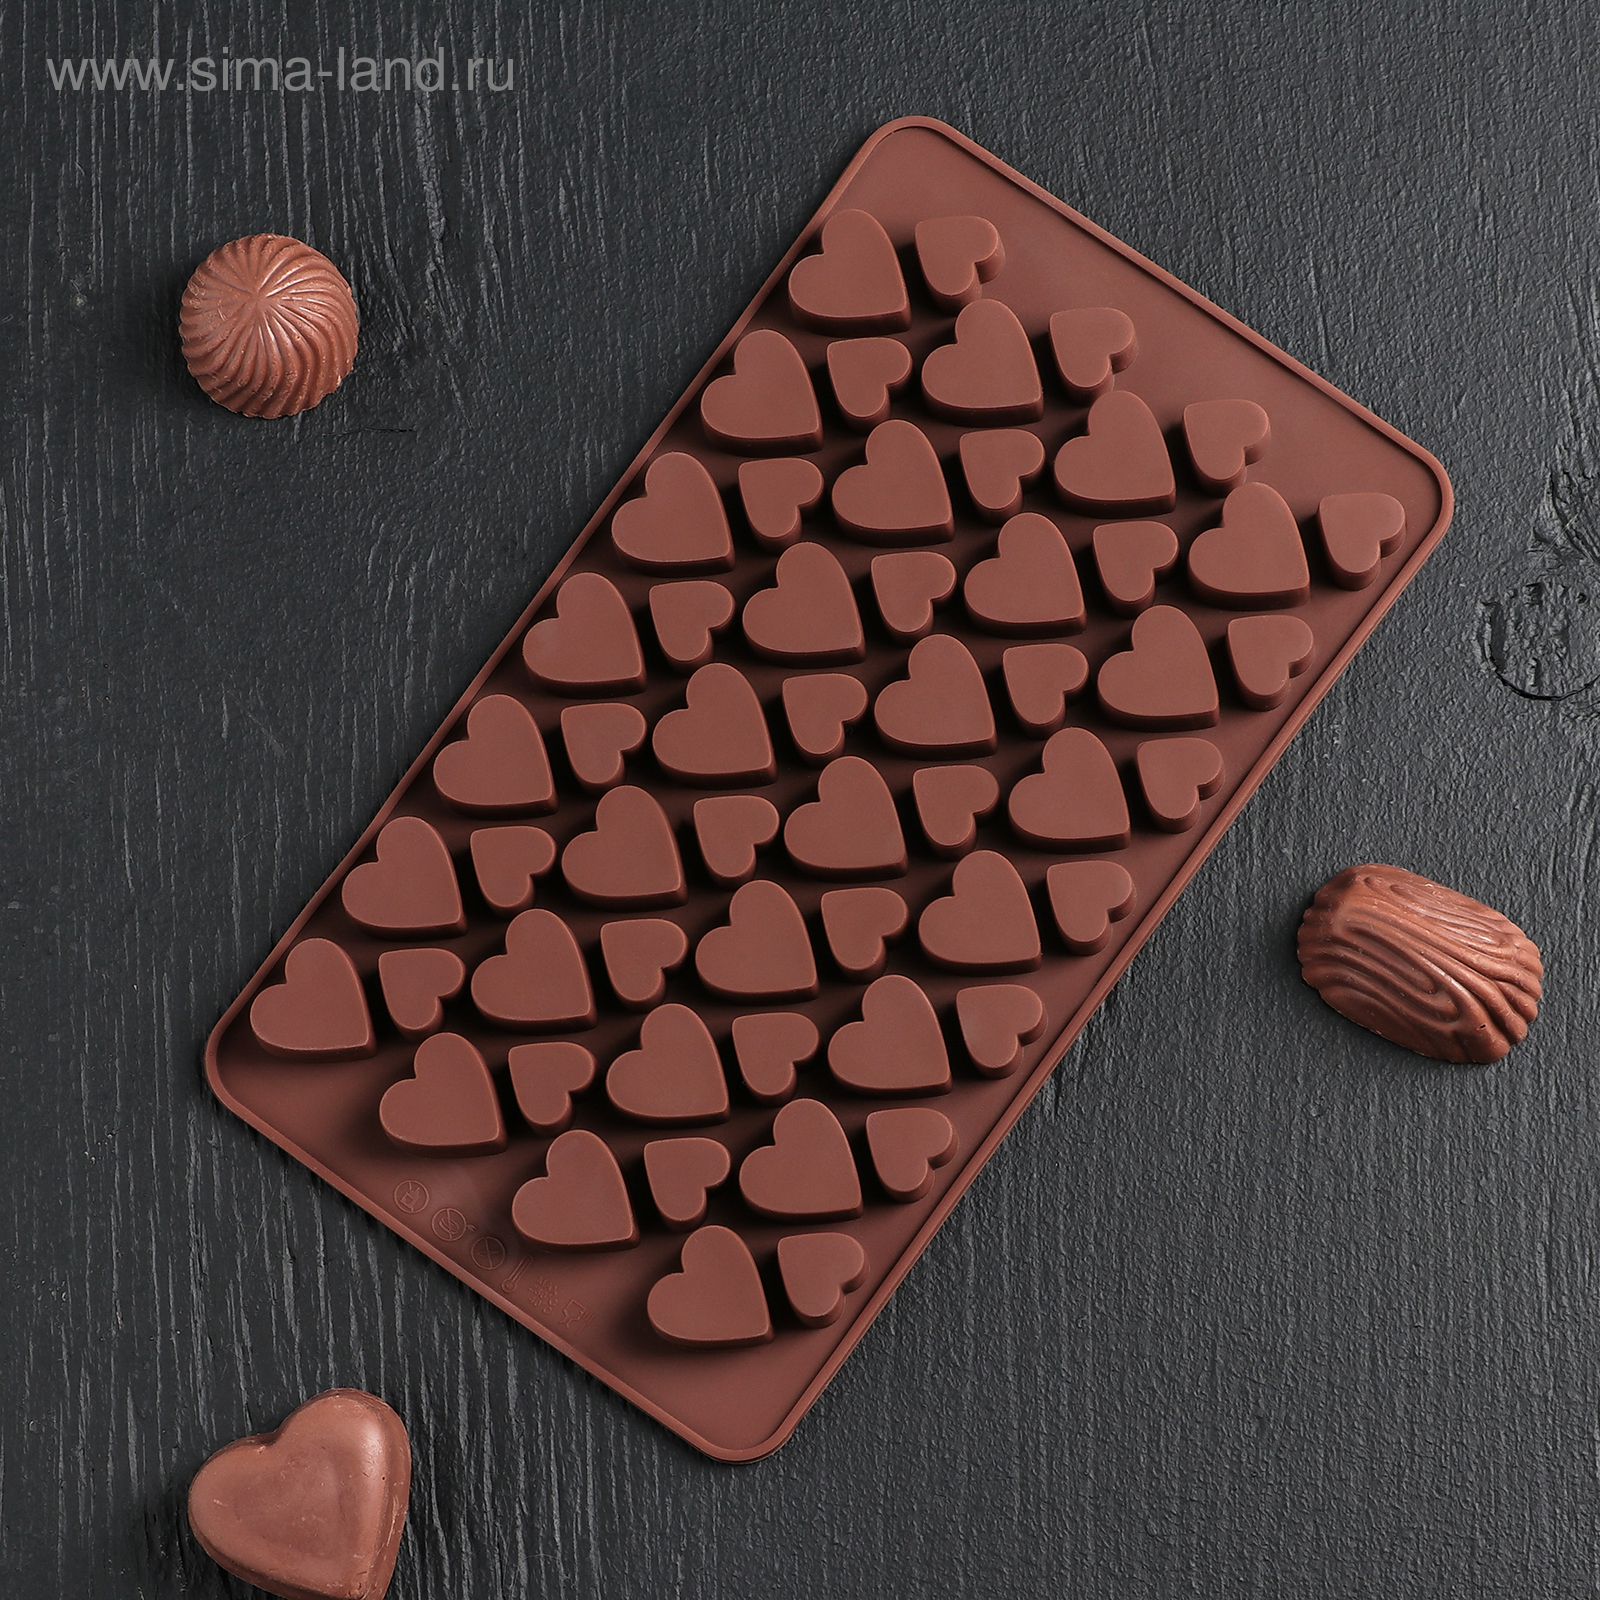 Форма силиконовая для льда и шоколада "Сердечки" 19.5*11.5 см